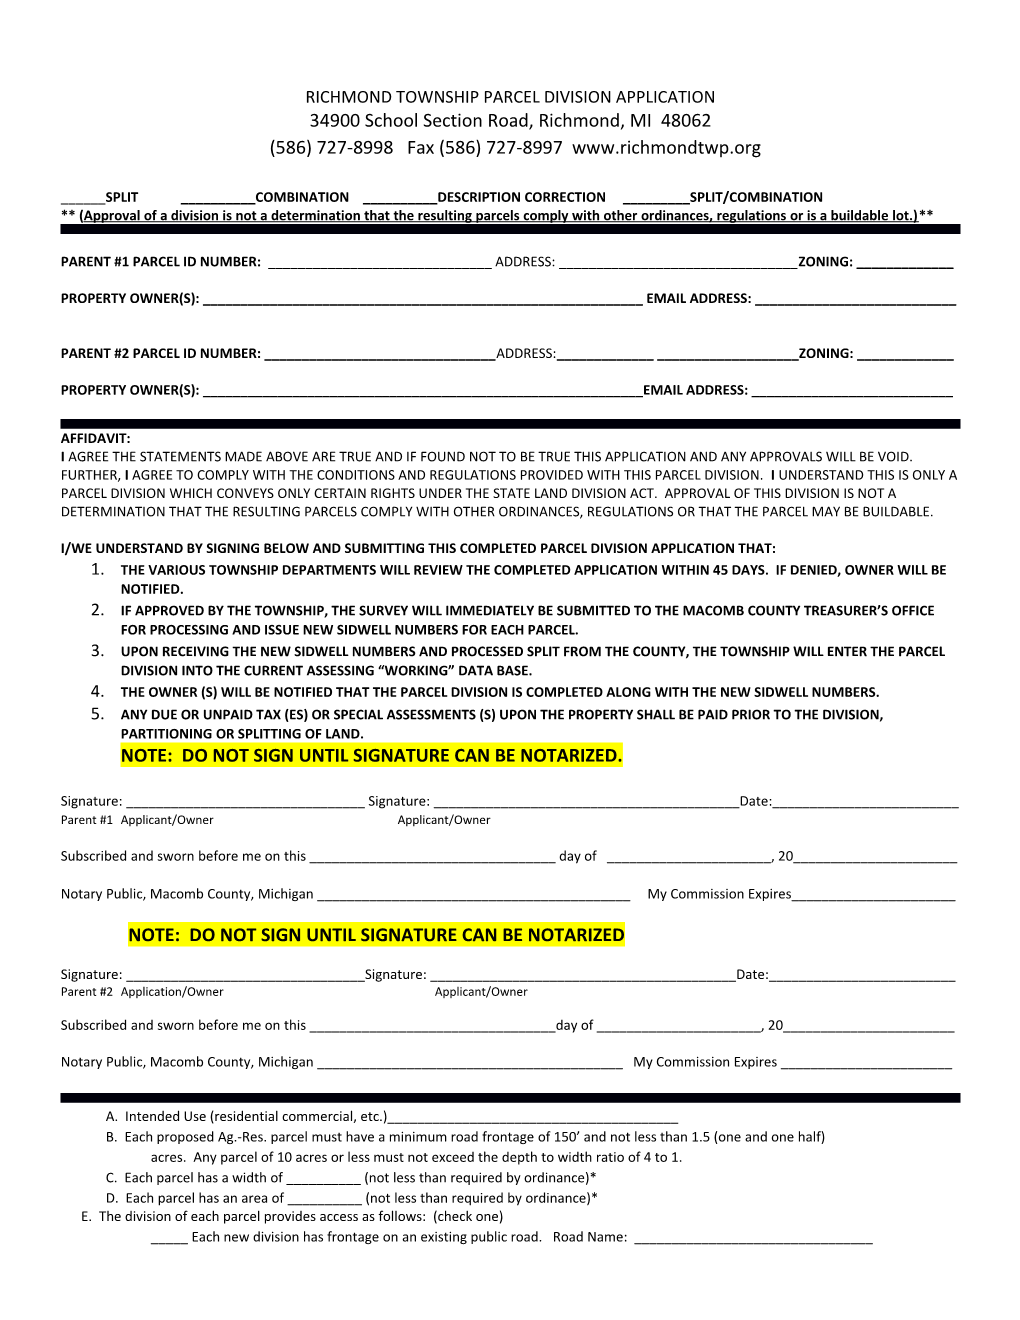 Richmond Township Parcel Division Application